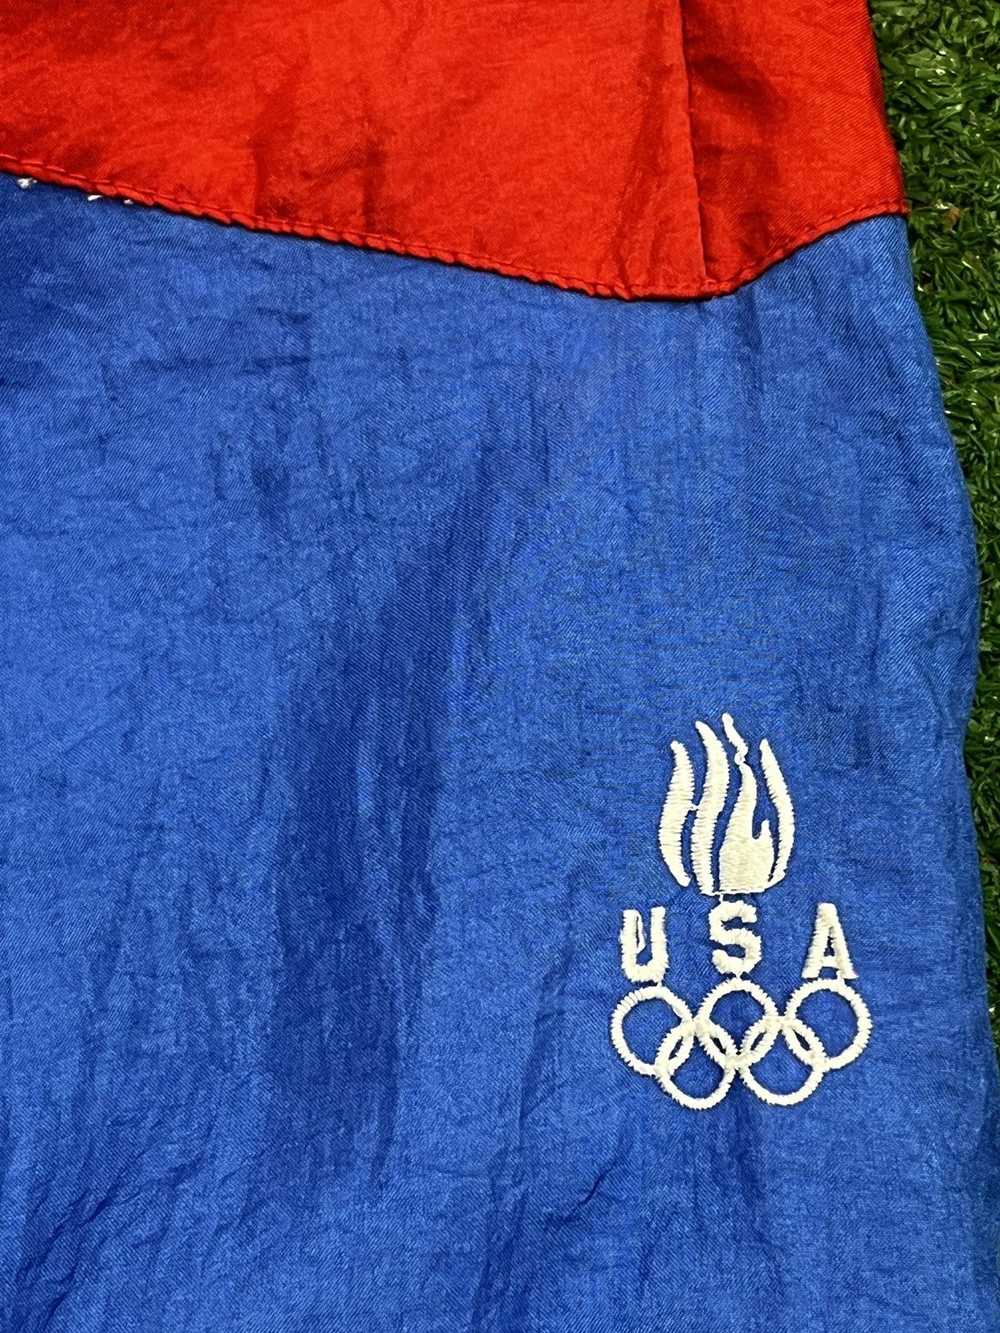 Jc Penney × Usa Olympics × Vintage 90s USA Olympi… - image 5